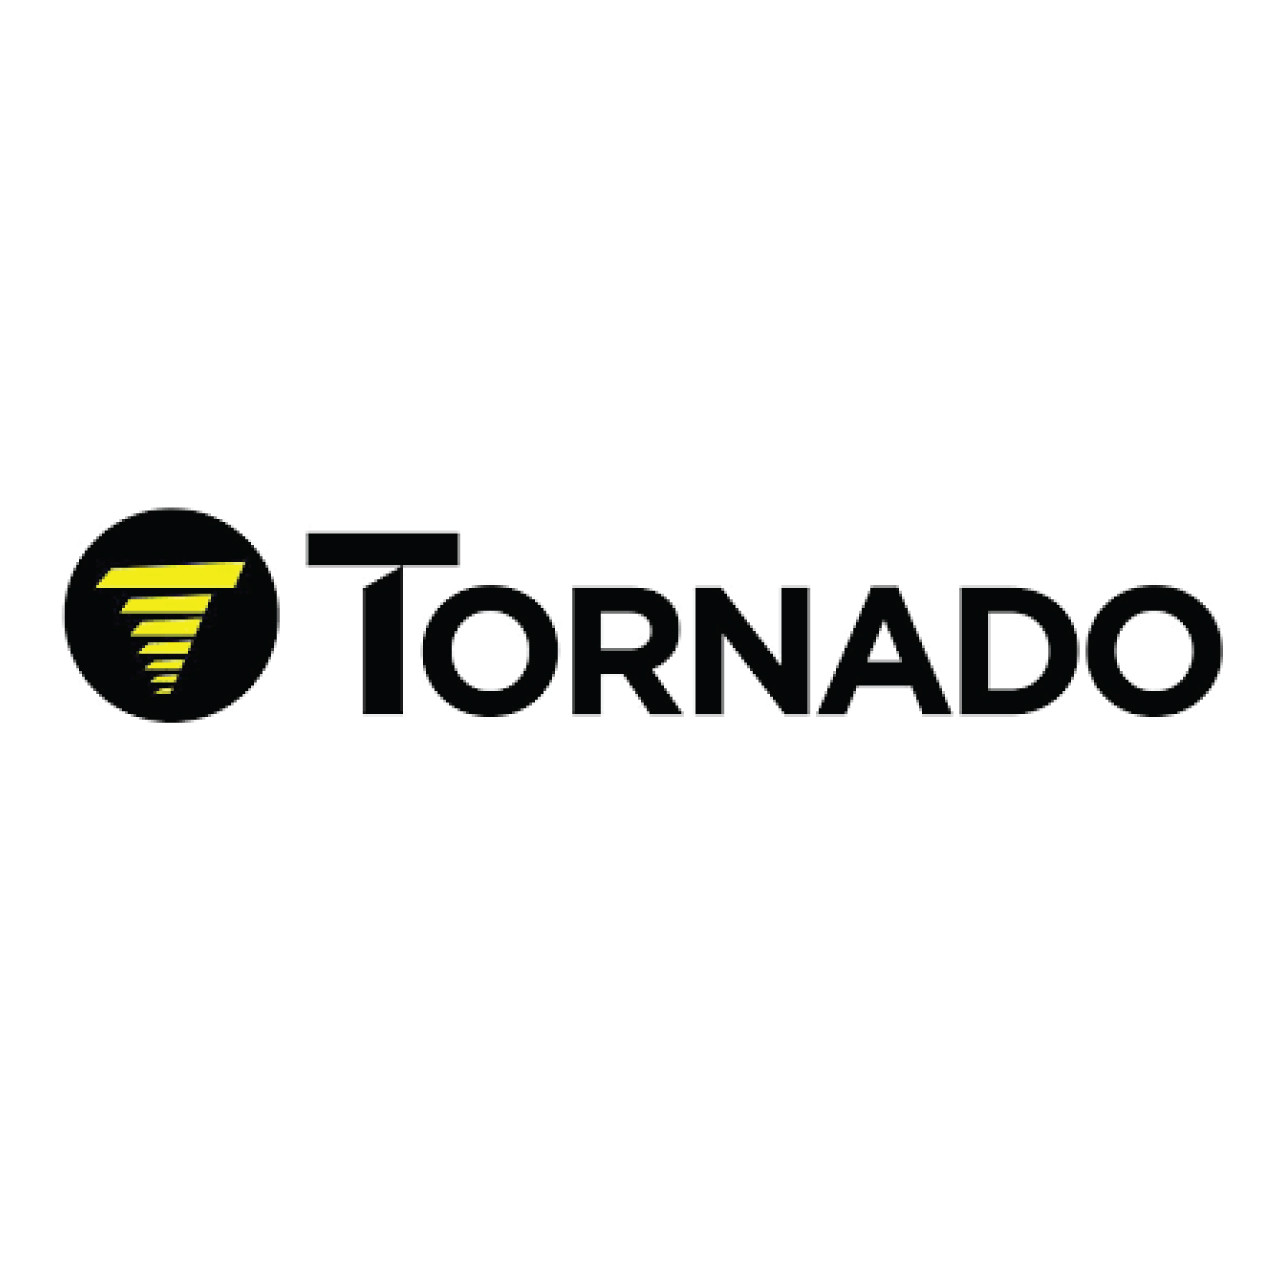 Tornado 02-3510-0000 - SPRING HANDLE INTERLOCK 98494 CAS16 2 REQUIRED pic